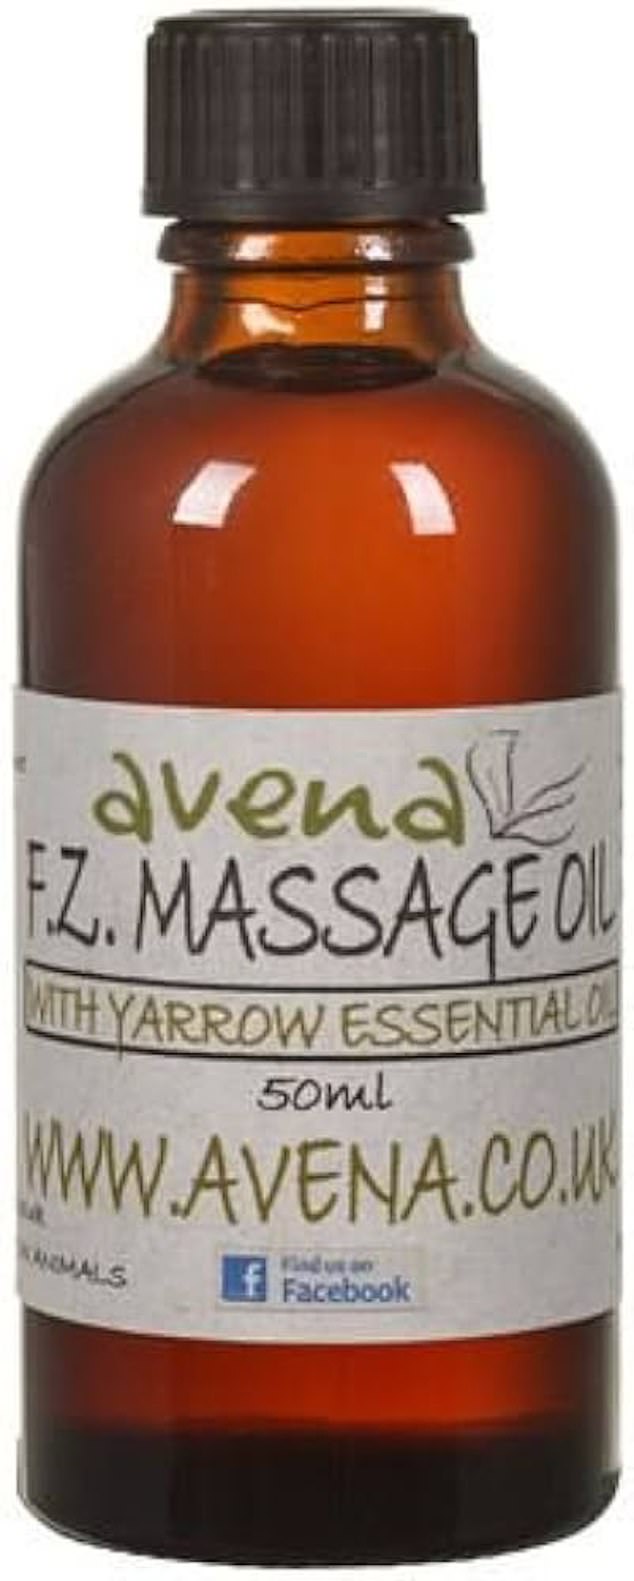 Massage Oil for Frozen Shoulder, £19.99, avena.co.uk